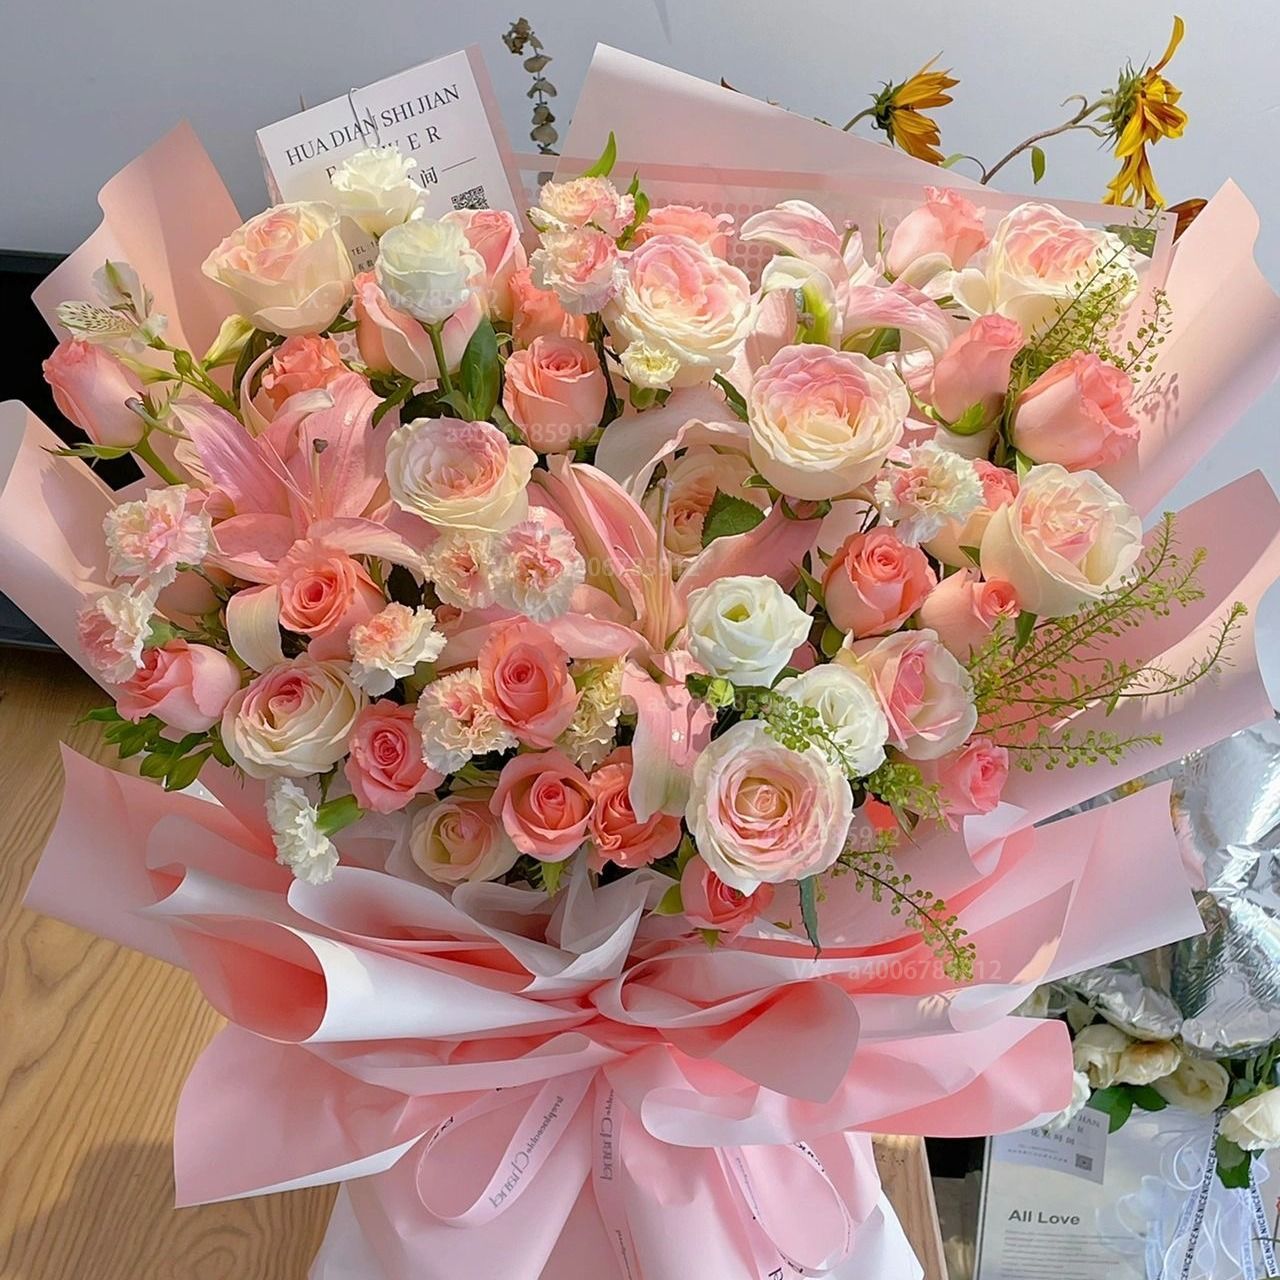 【相逢今生】1束粉百合混搭粉玫瑰花束送女友生日鲜花生日礼物花店送花上门